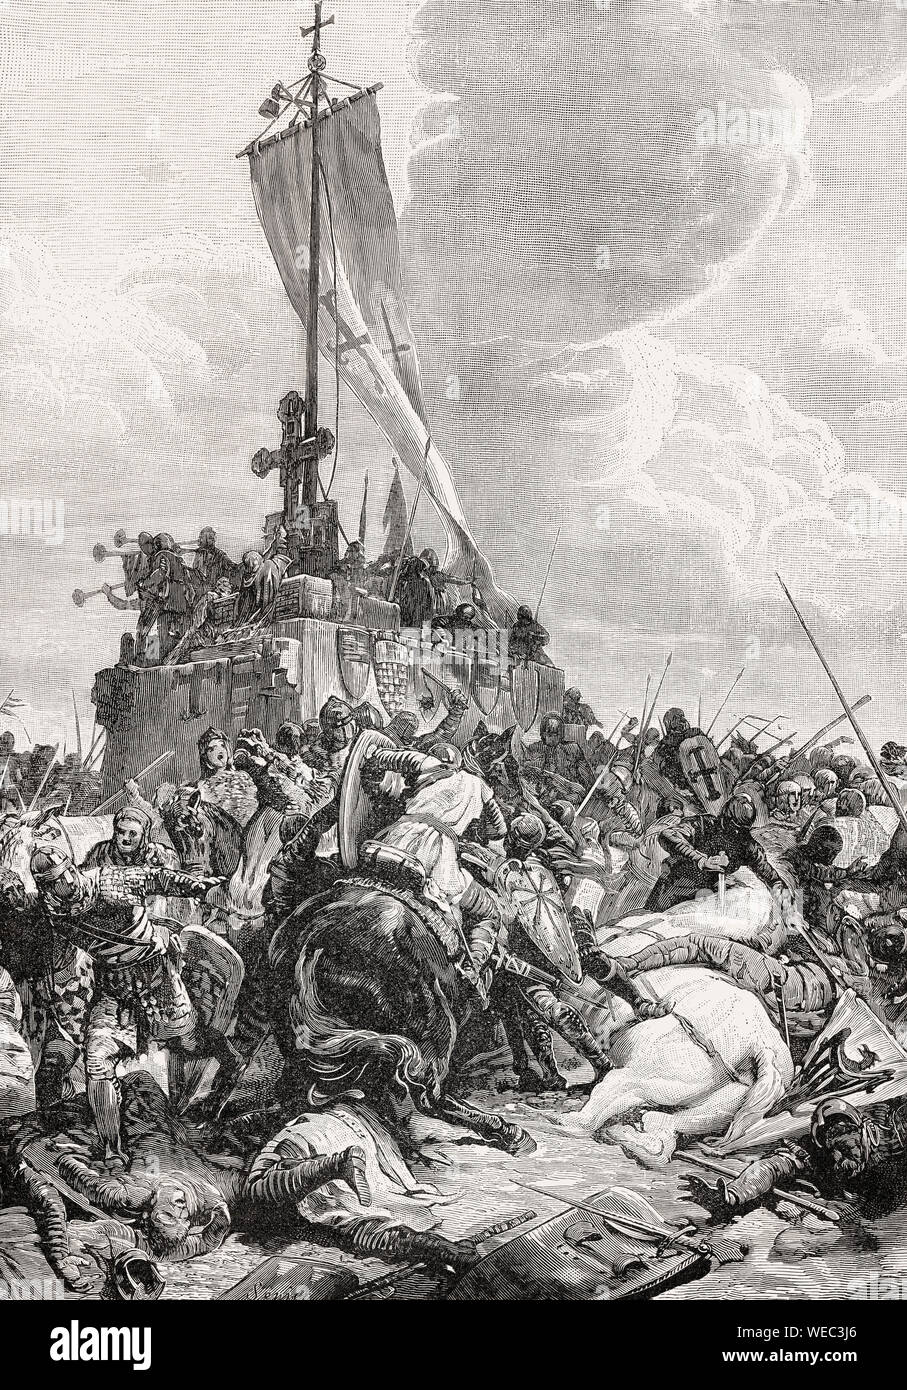 La battaglia di Legnano il 29 maggio 1176, tra le forze del Sacro Romano Impero e la Lega Lombarda Foto Stock